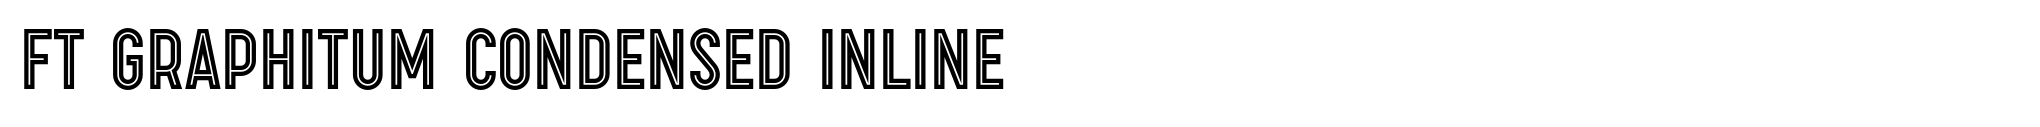 FT Graphitum Condensed Inline image